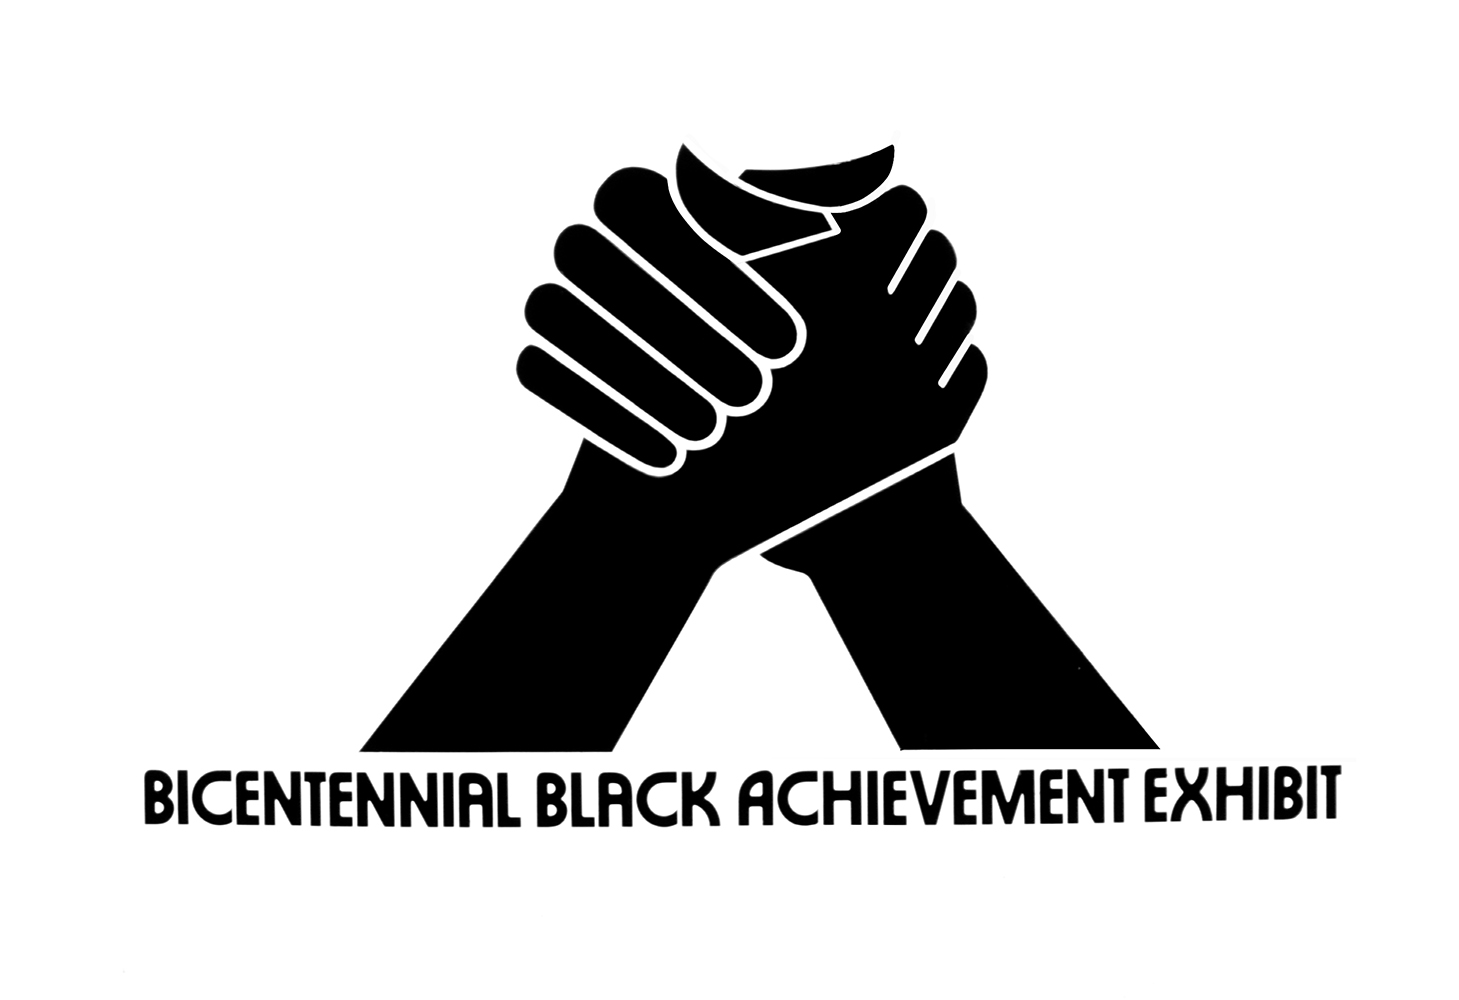 Bicentennial Black Achievement Exhibit logo, 1976